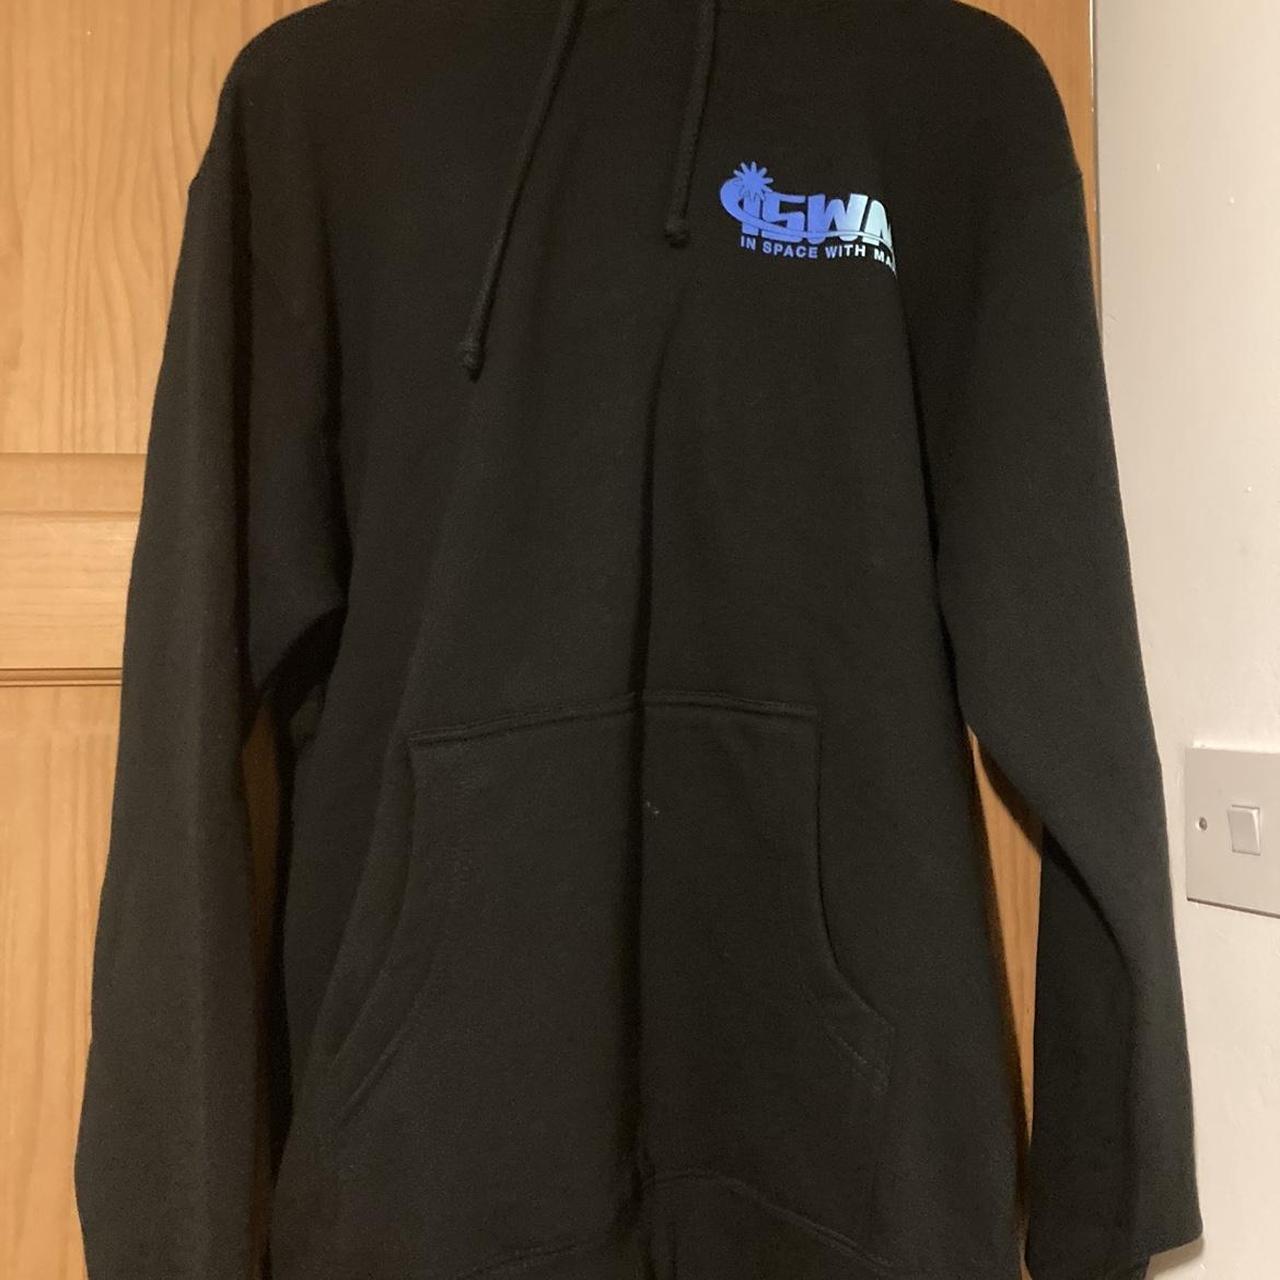 ISWM- cloak brand in space with markiplier hoodie... - Depop